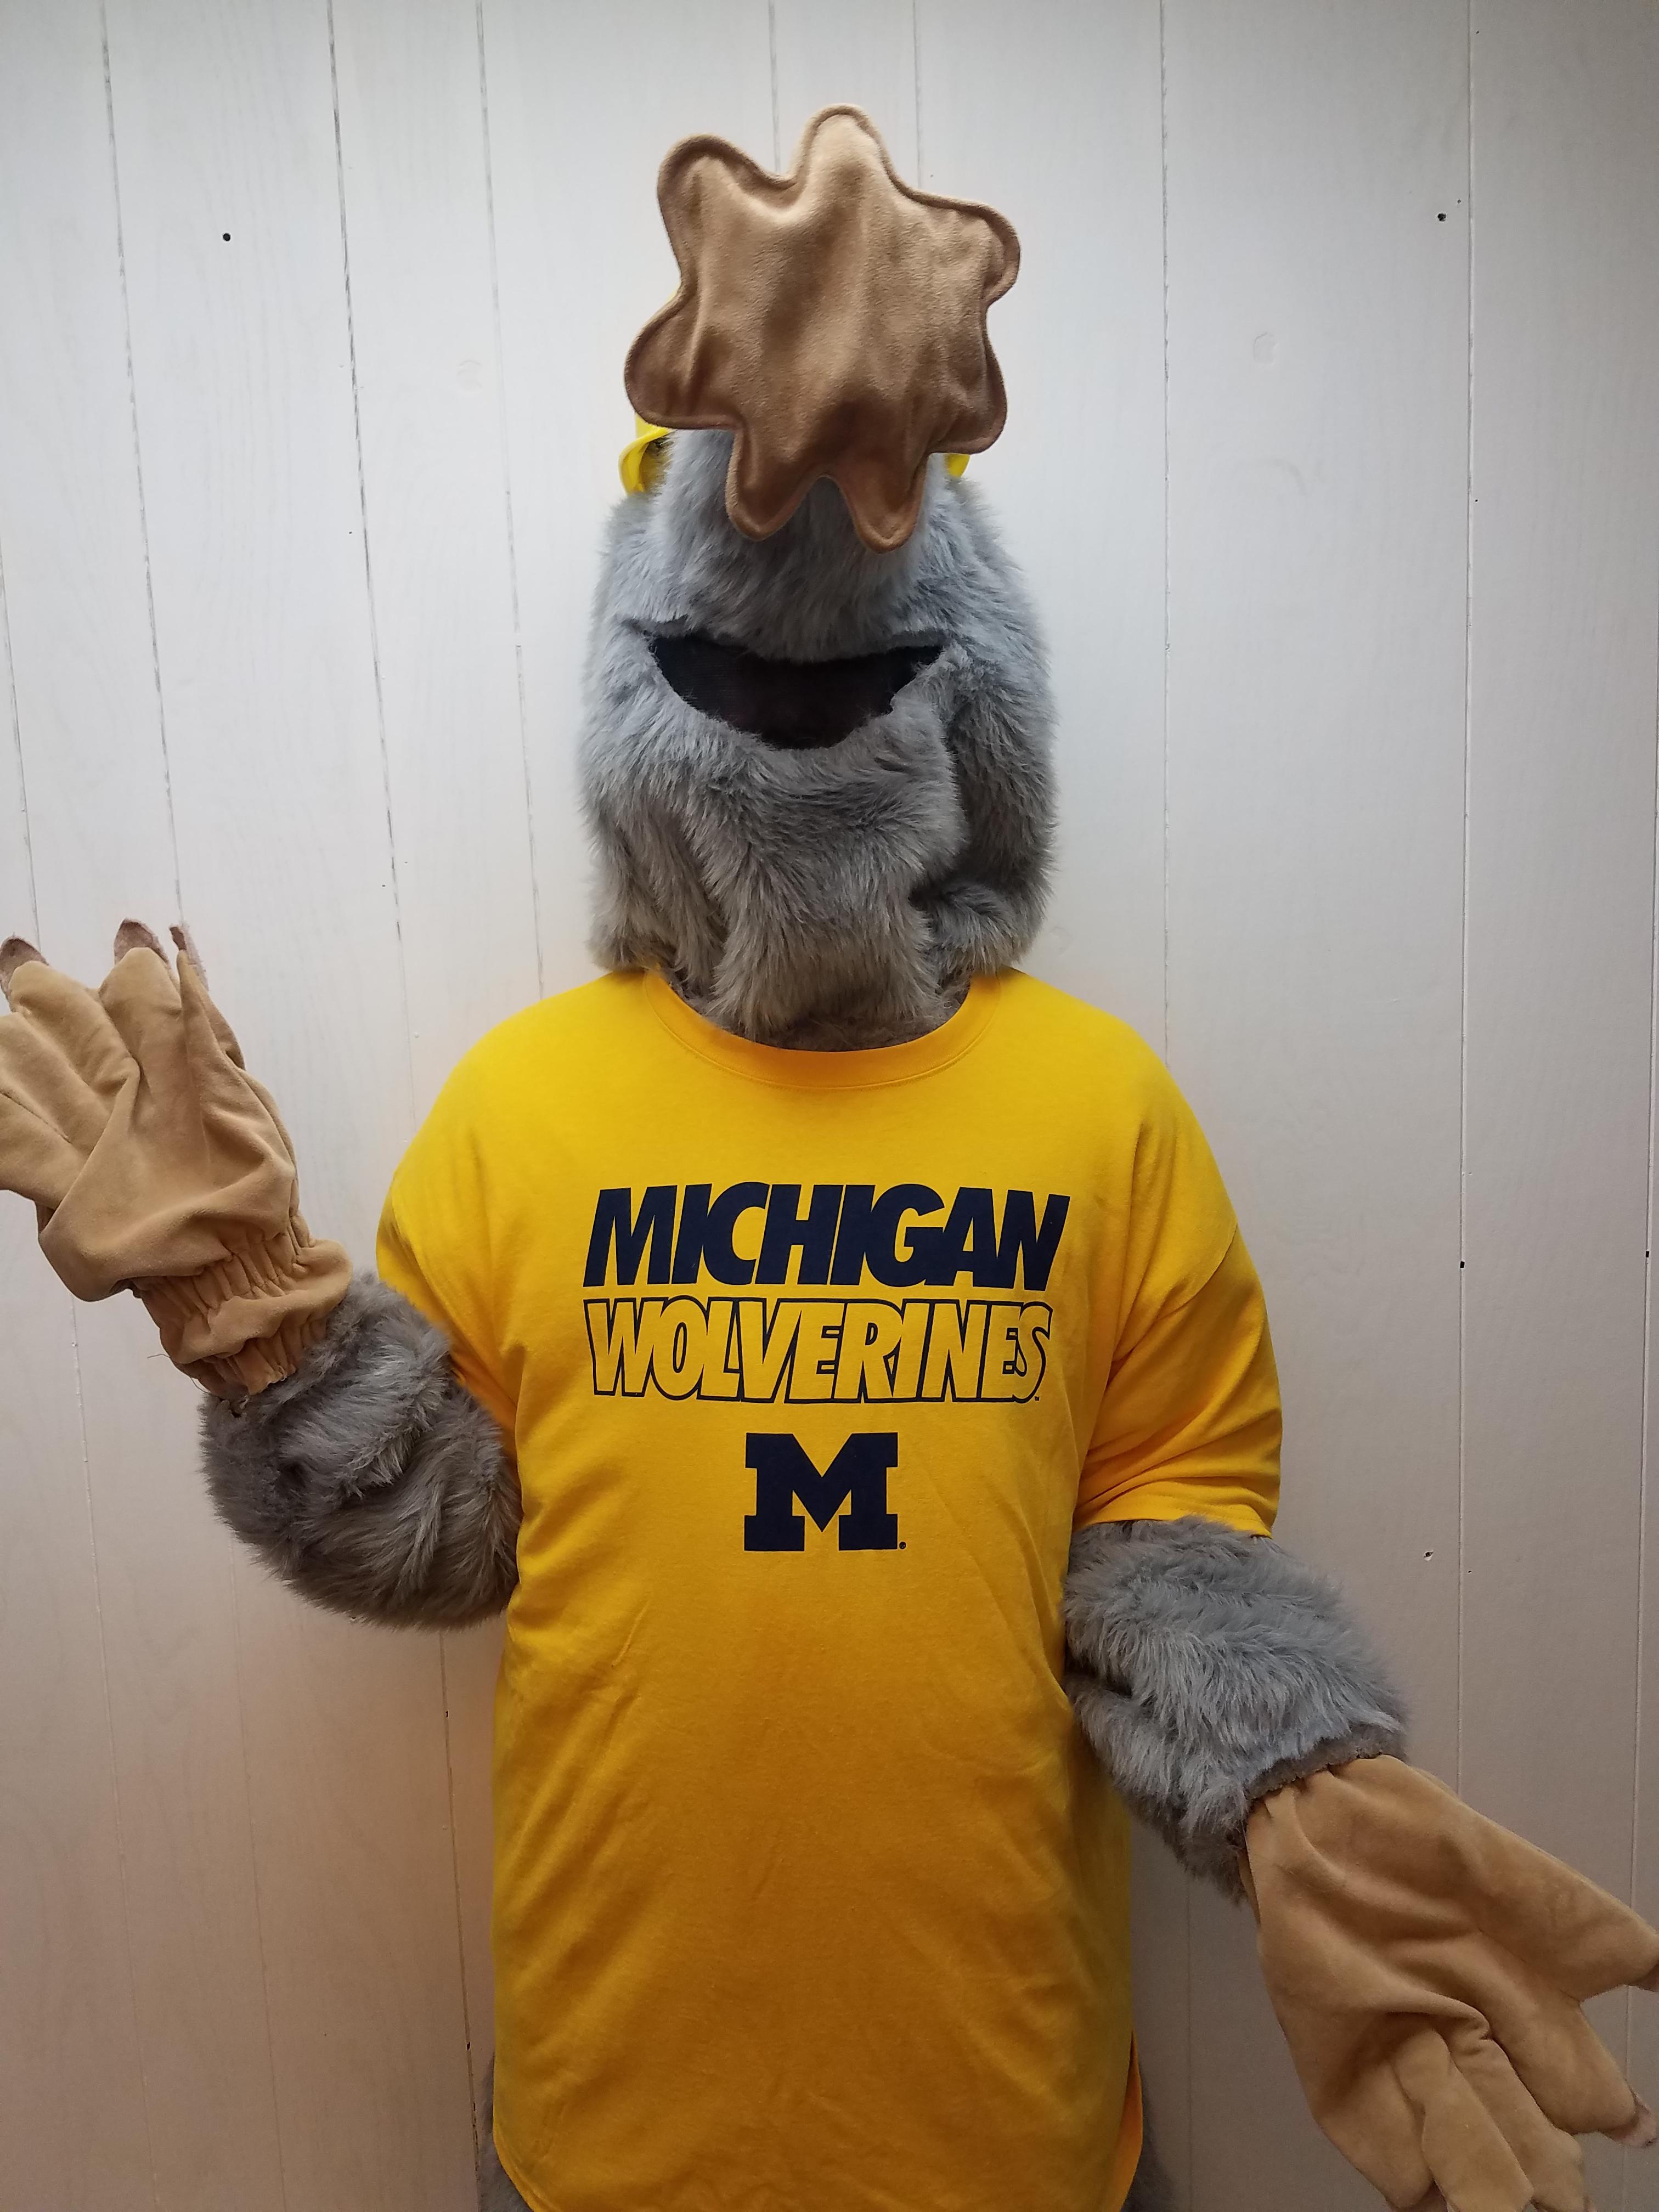 Mole mascot wearing a Michigan Wolverines tee-shirt and waving.